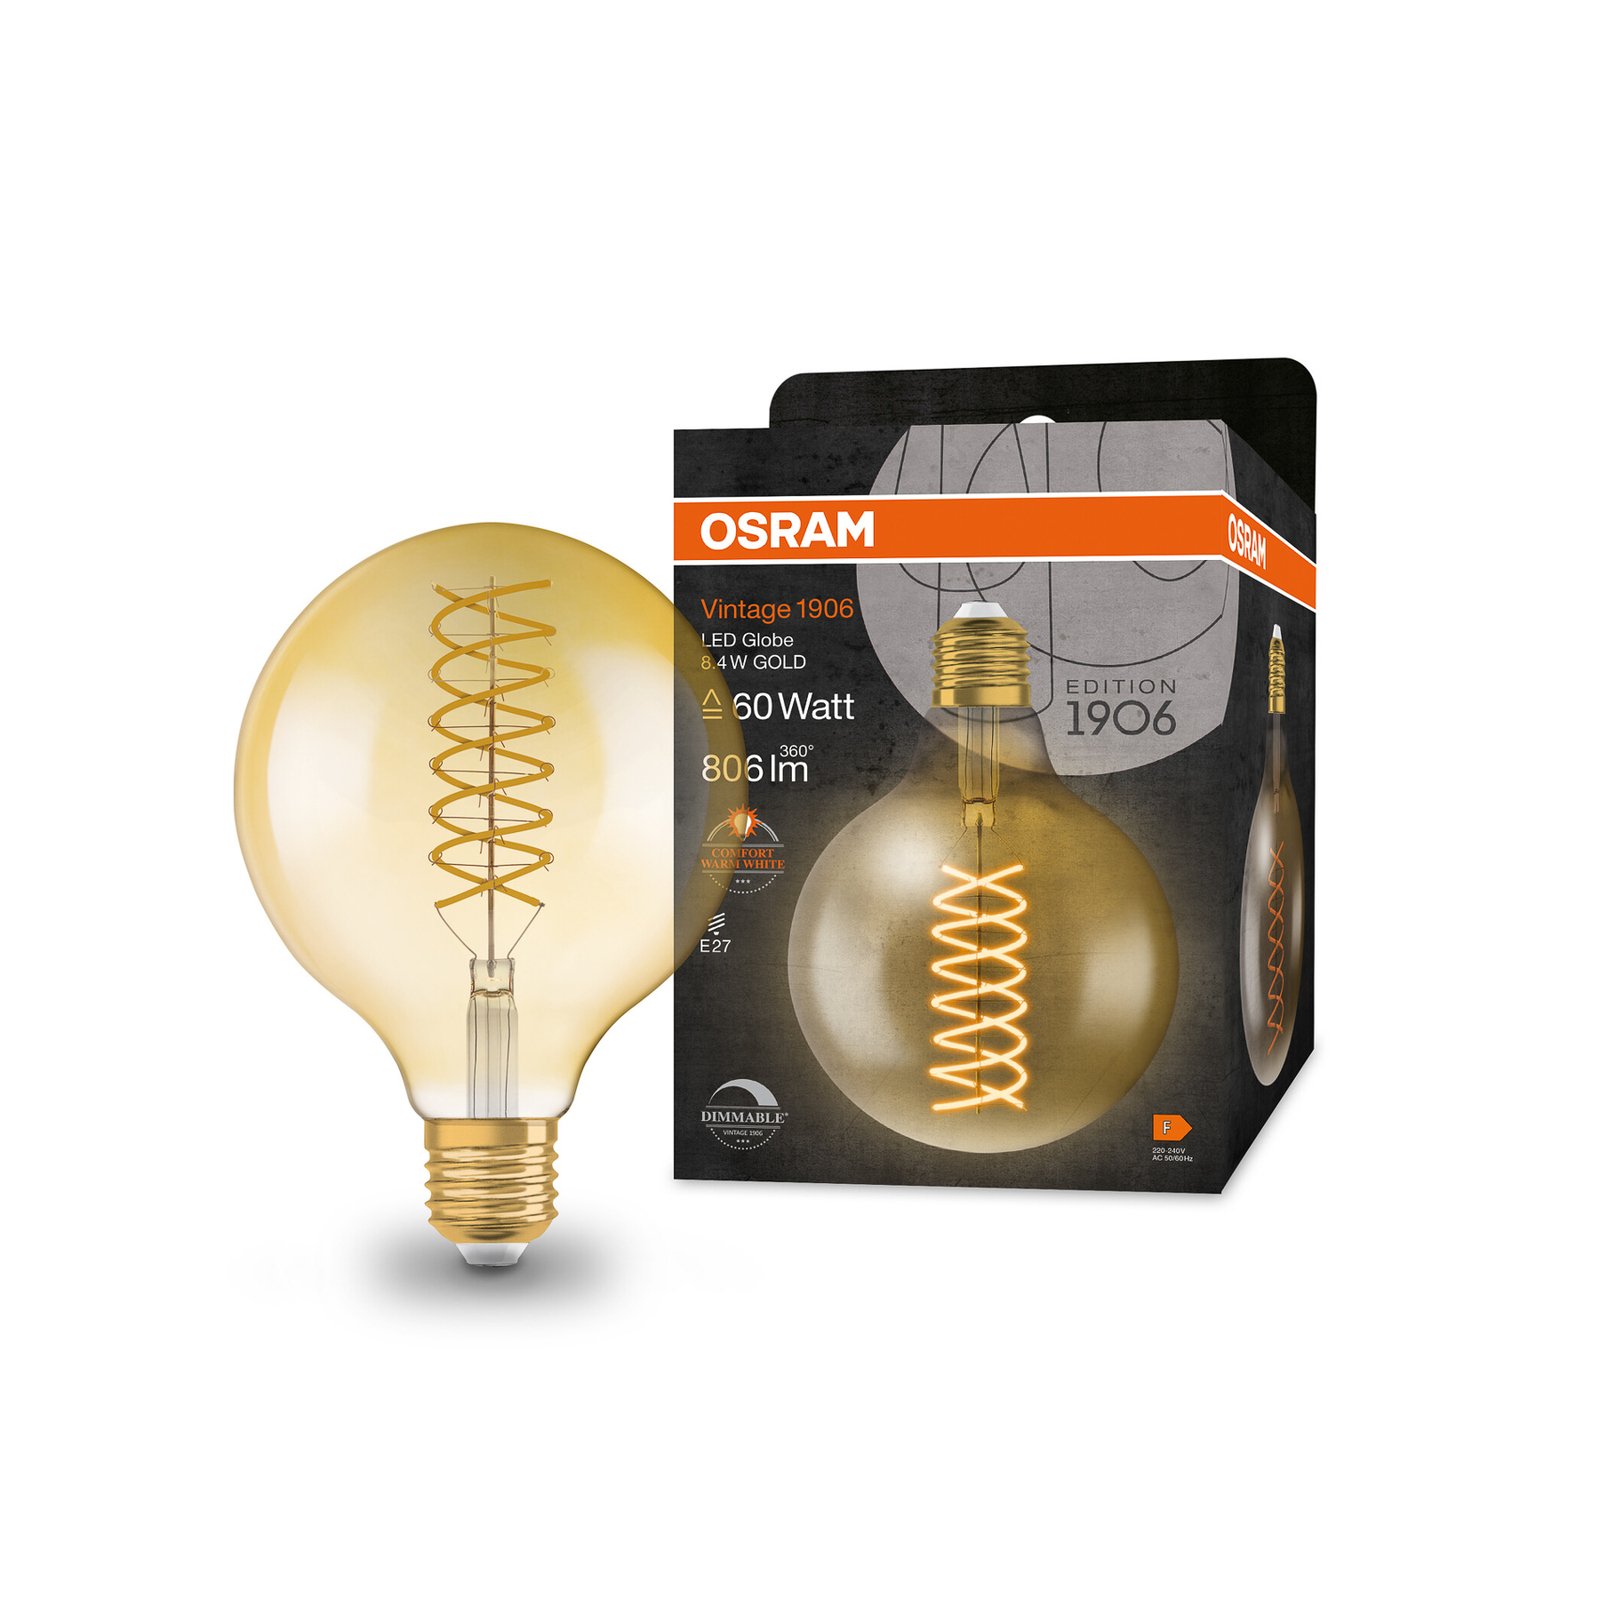 OSRAM LED Vintage 1906, G125, E27, 8,4 W, oro, 824, dimmerabile.